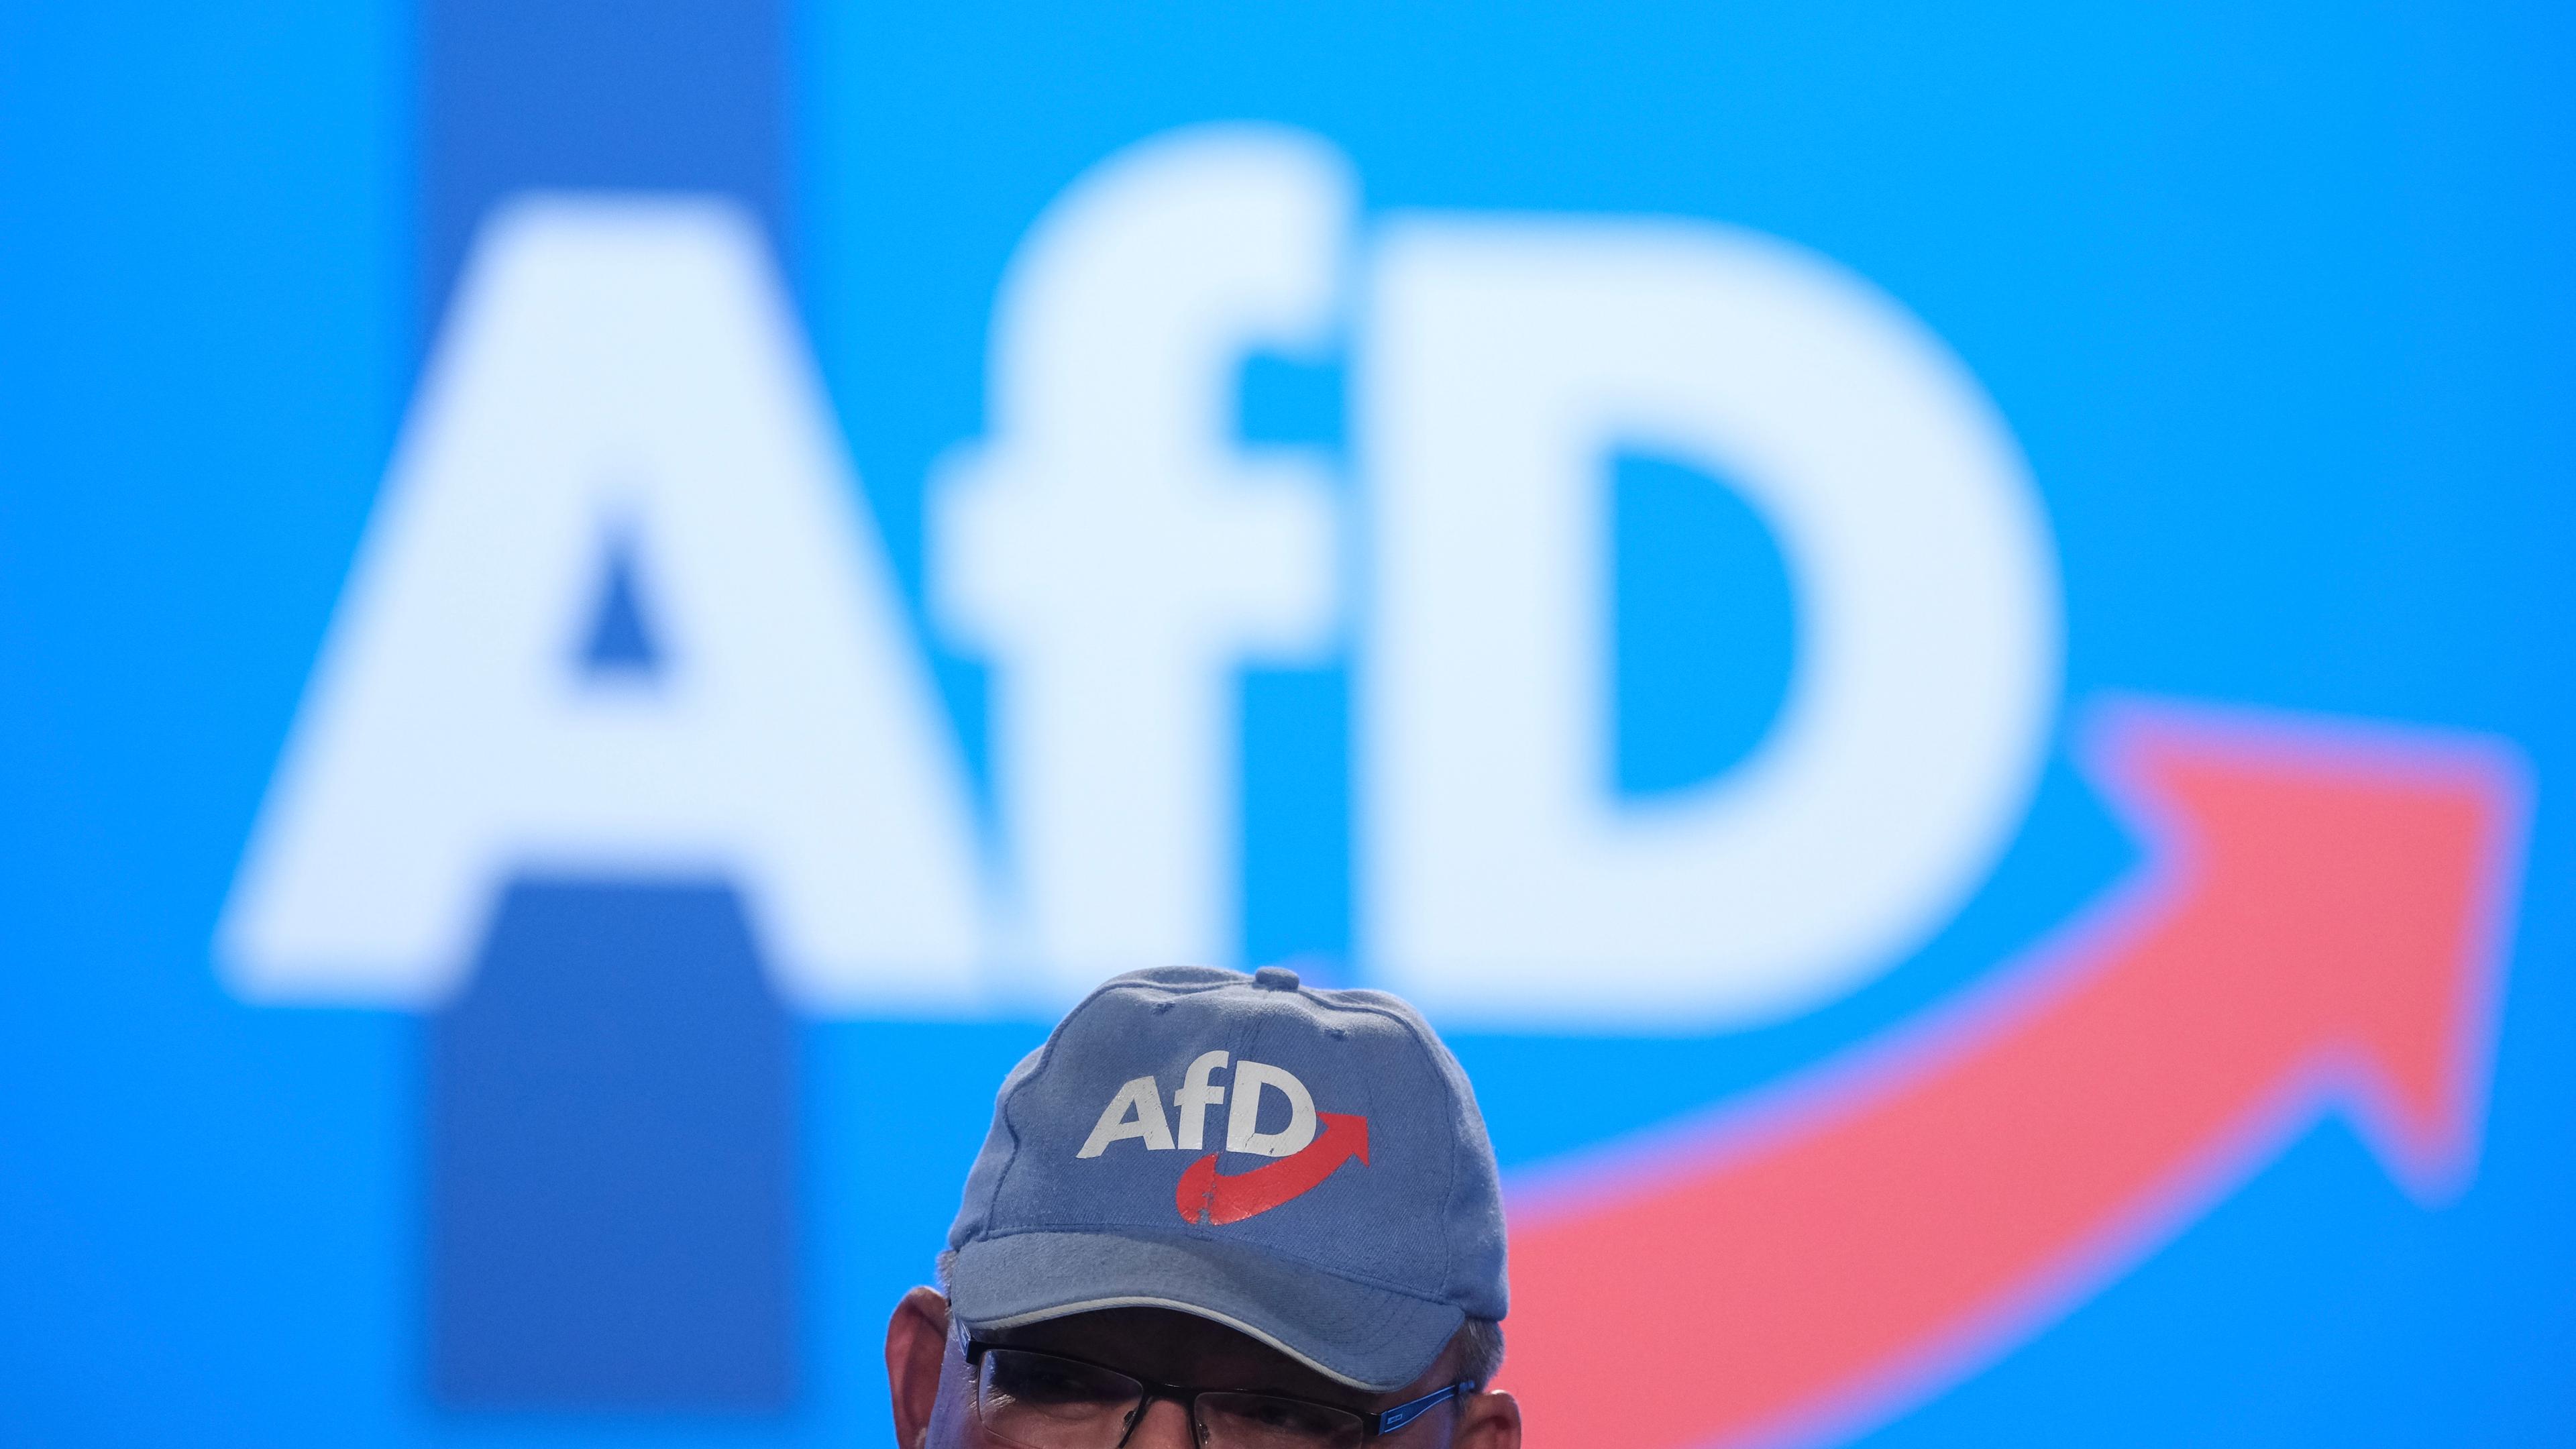 Siegeszug der AfD in Thüringen bleibt aus